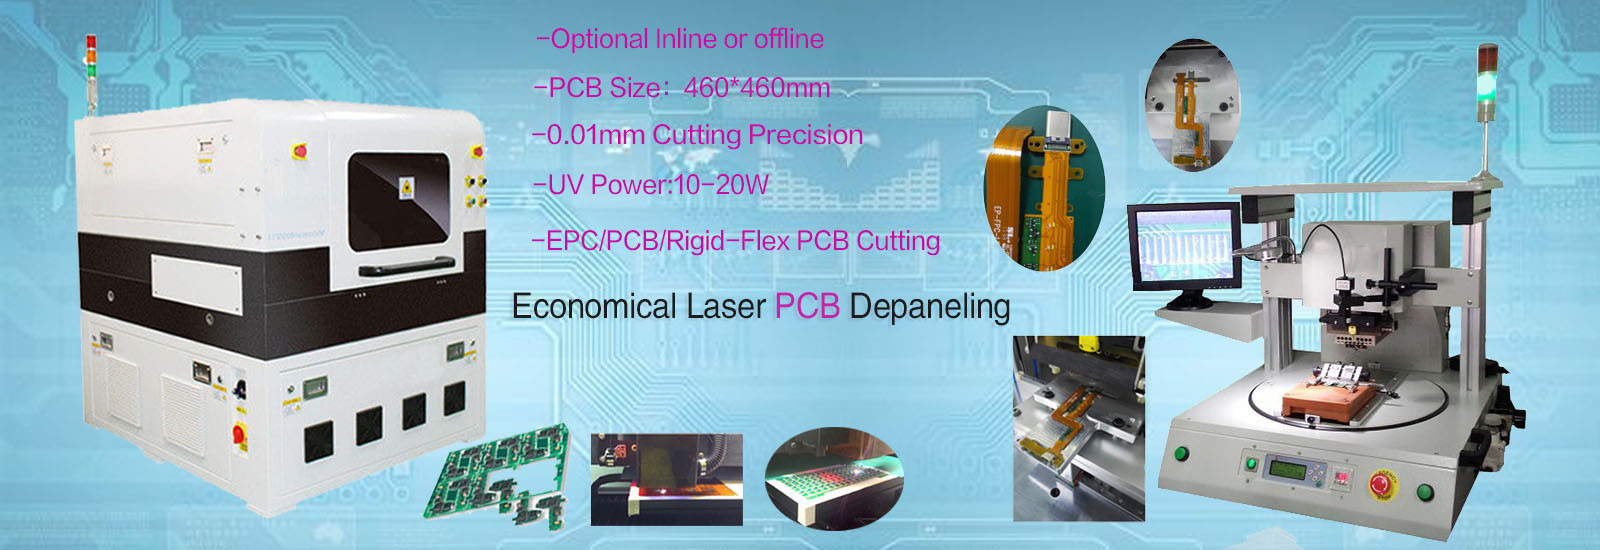 ποιότητας depaneling μηχανή PCB εργοστάσιο